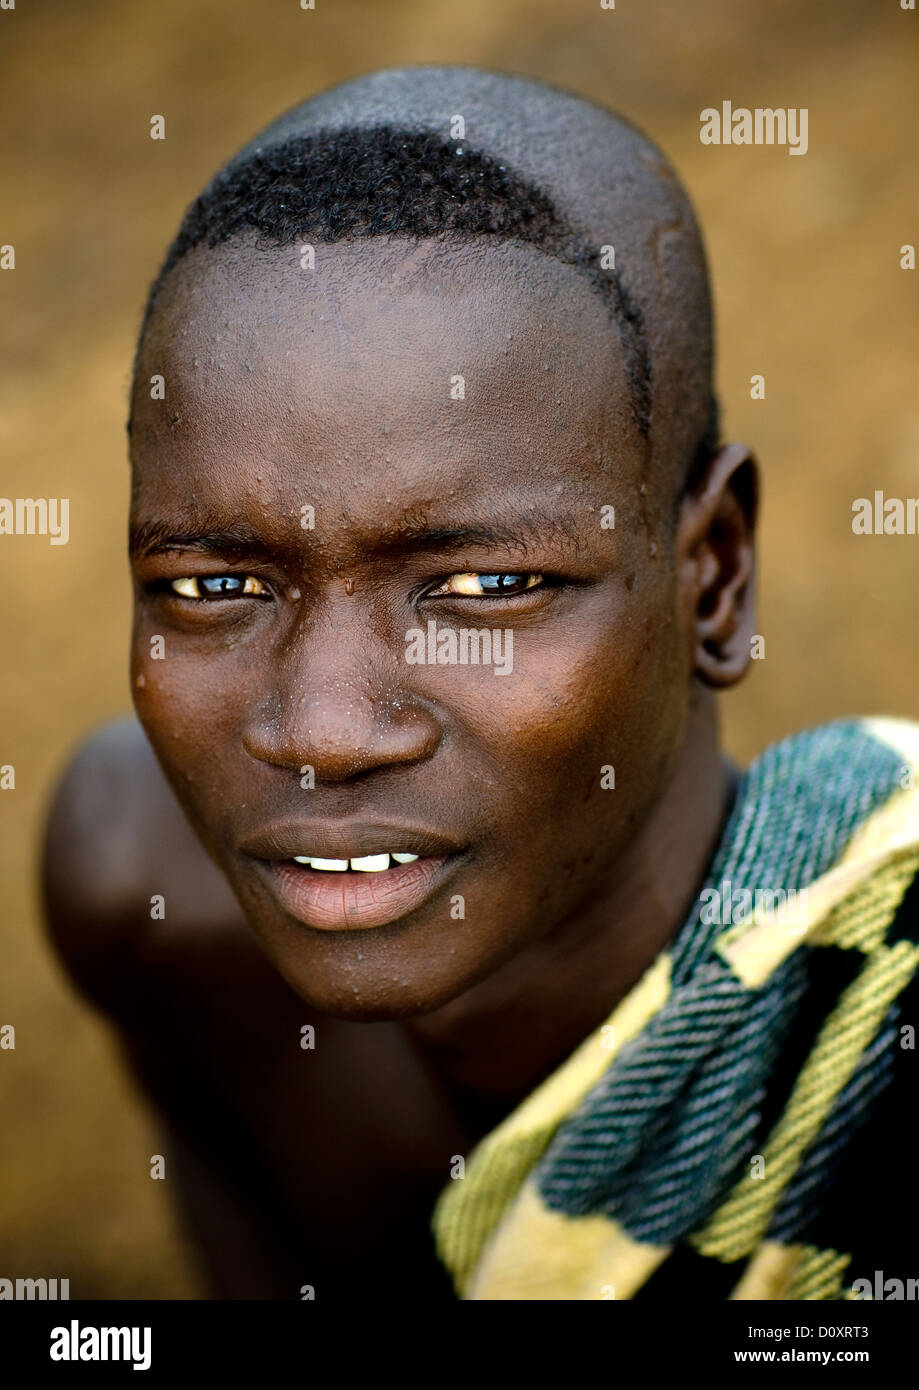 retrato-de-un-hombre-de-la-tribu-bodi-con-la-cabeza-rapada-hana-mursi-etiopia-d0xrt3.jpg